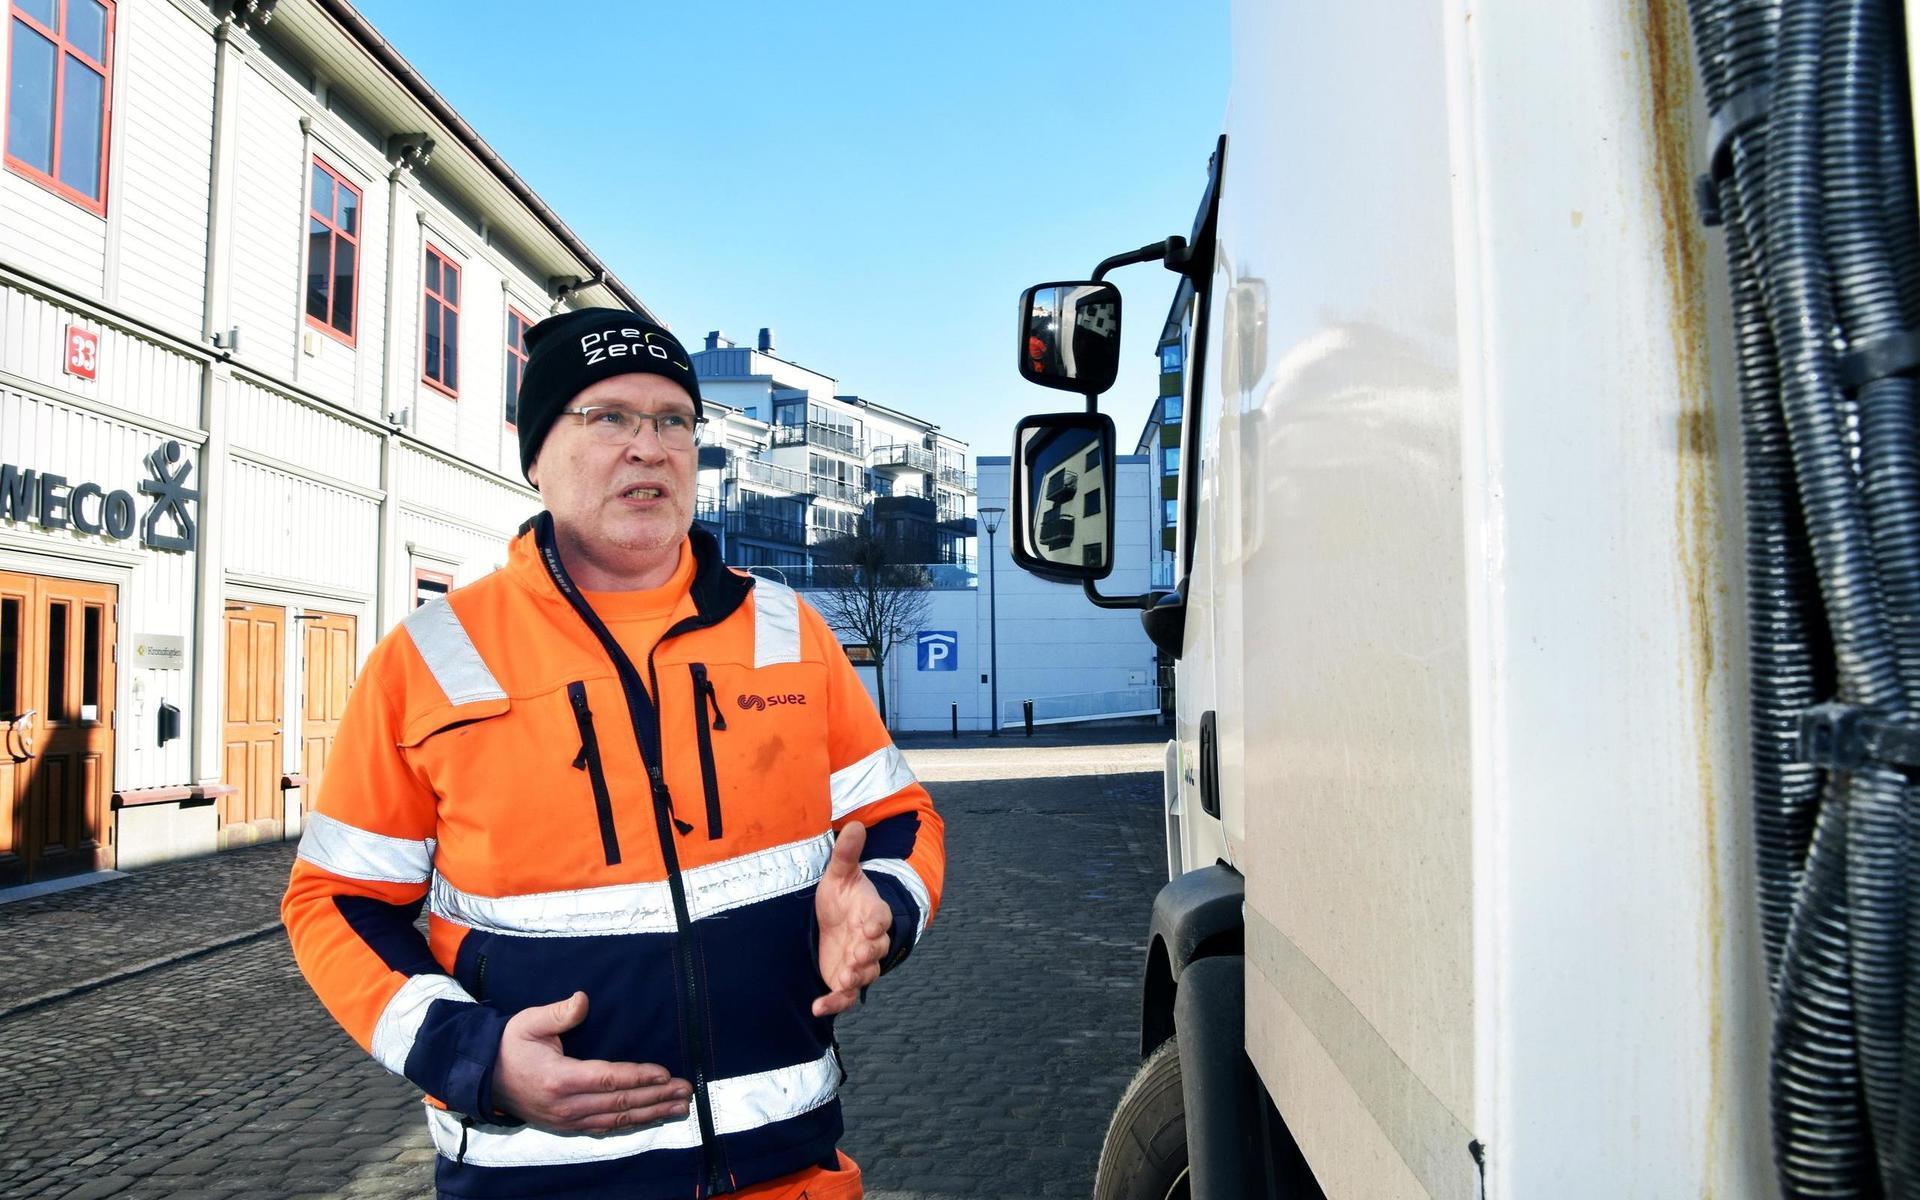 Yrkeschauffören Jörgen Broth dömdes till böter för en fortkörning i Varbergs tingsrätt. Han tycker att juridiken inte följer med tekniken och ska lyfta frågan till riksdagspartierna. 